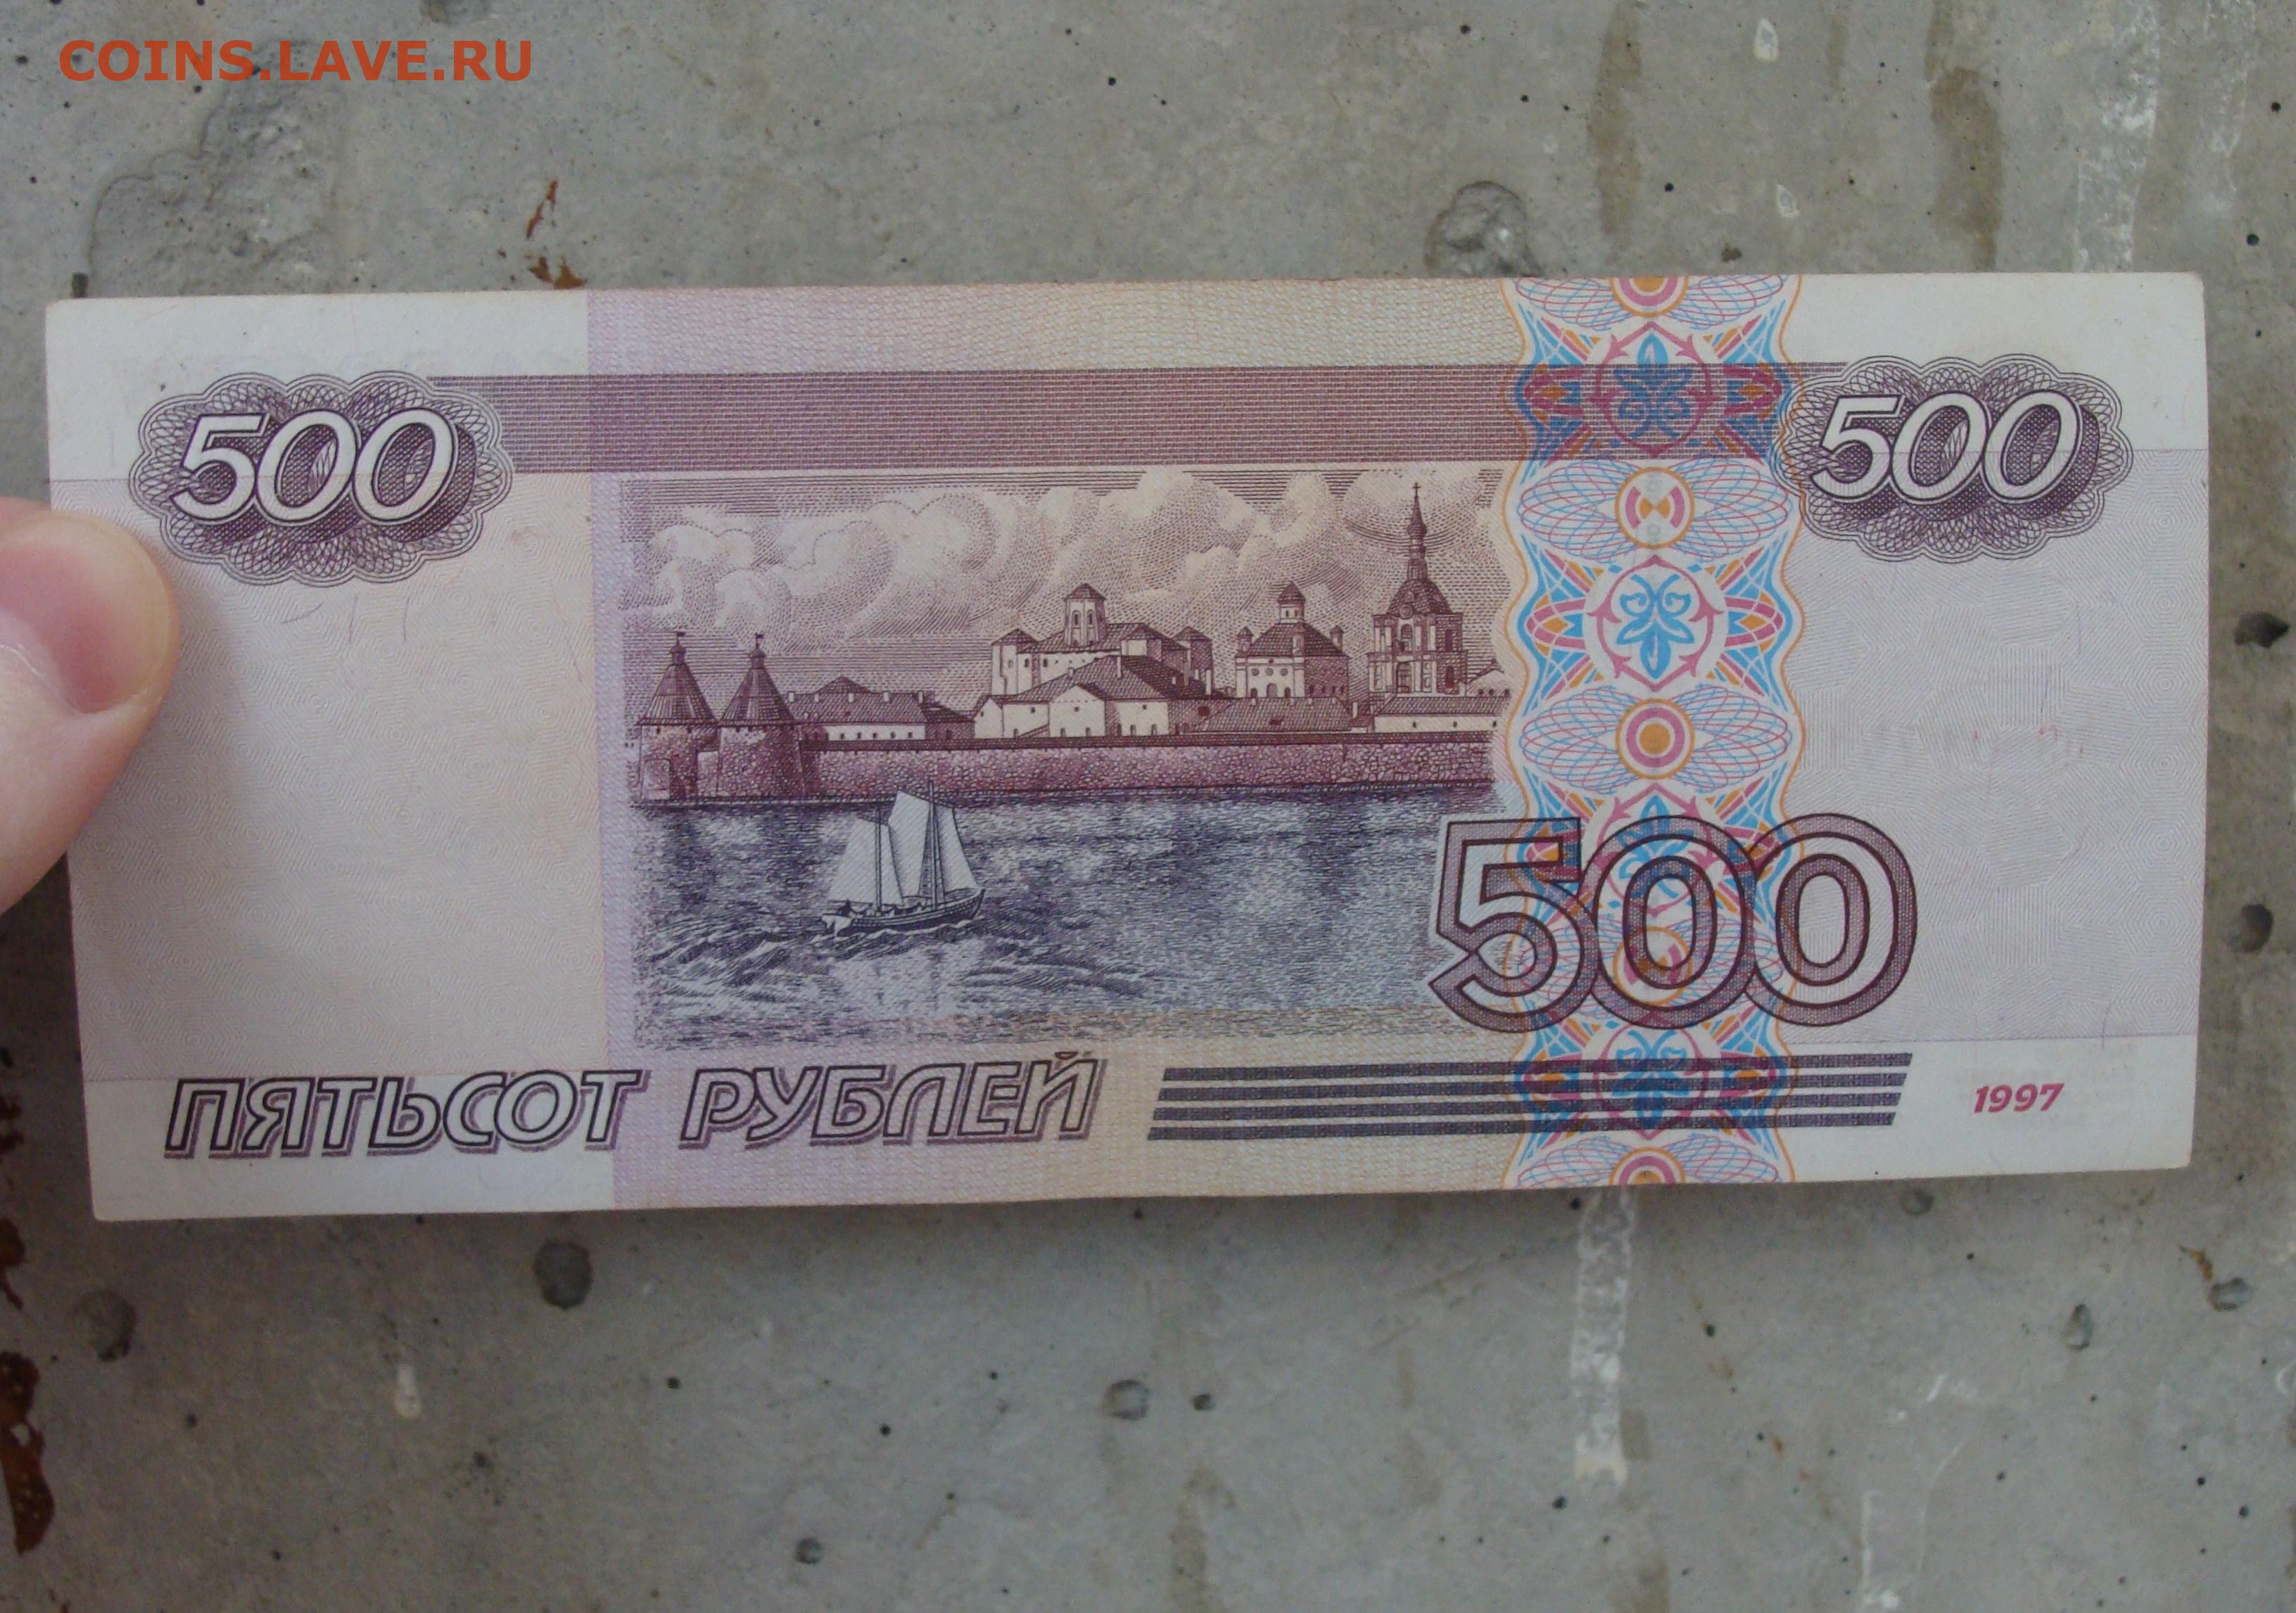 3000 российских рублей. 500 Рублей России. 500 Рублей 2001 года модификации. 500 Р модификация 2001. 500 Российских рублей.